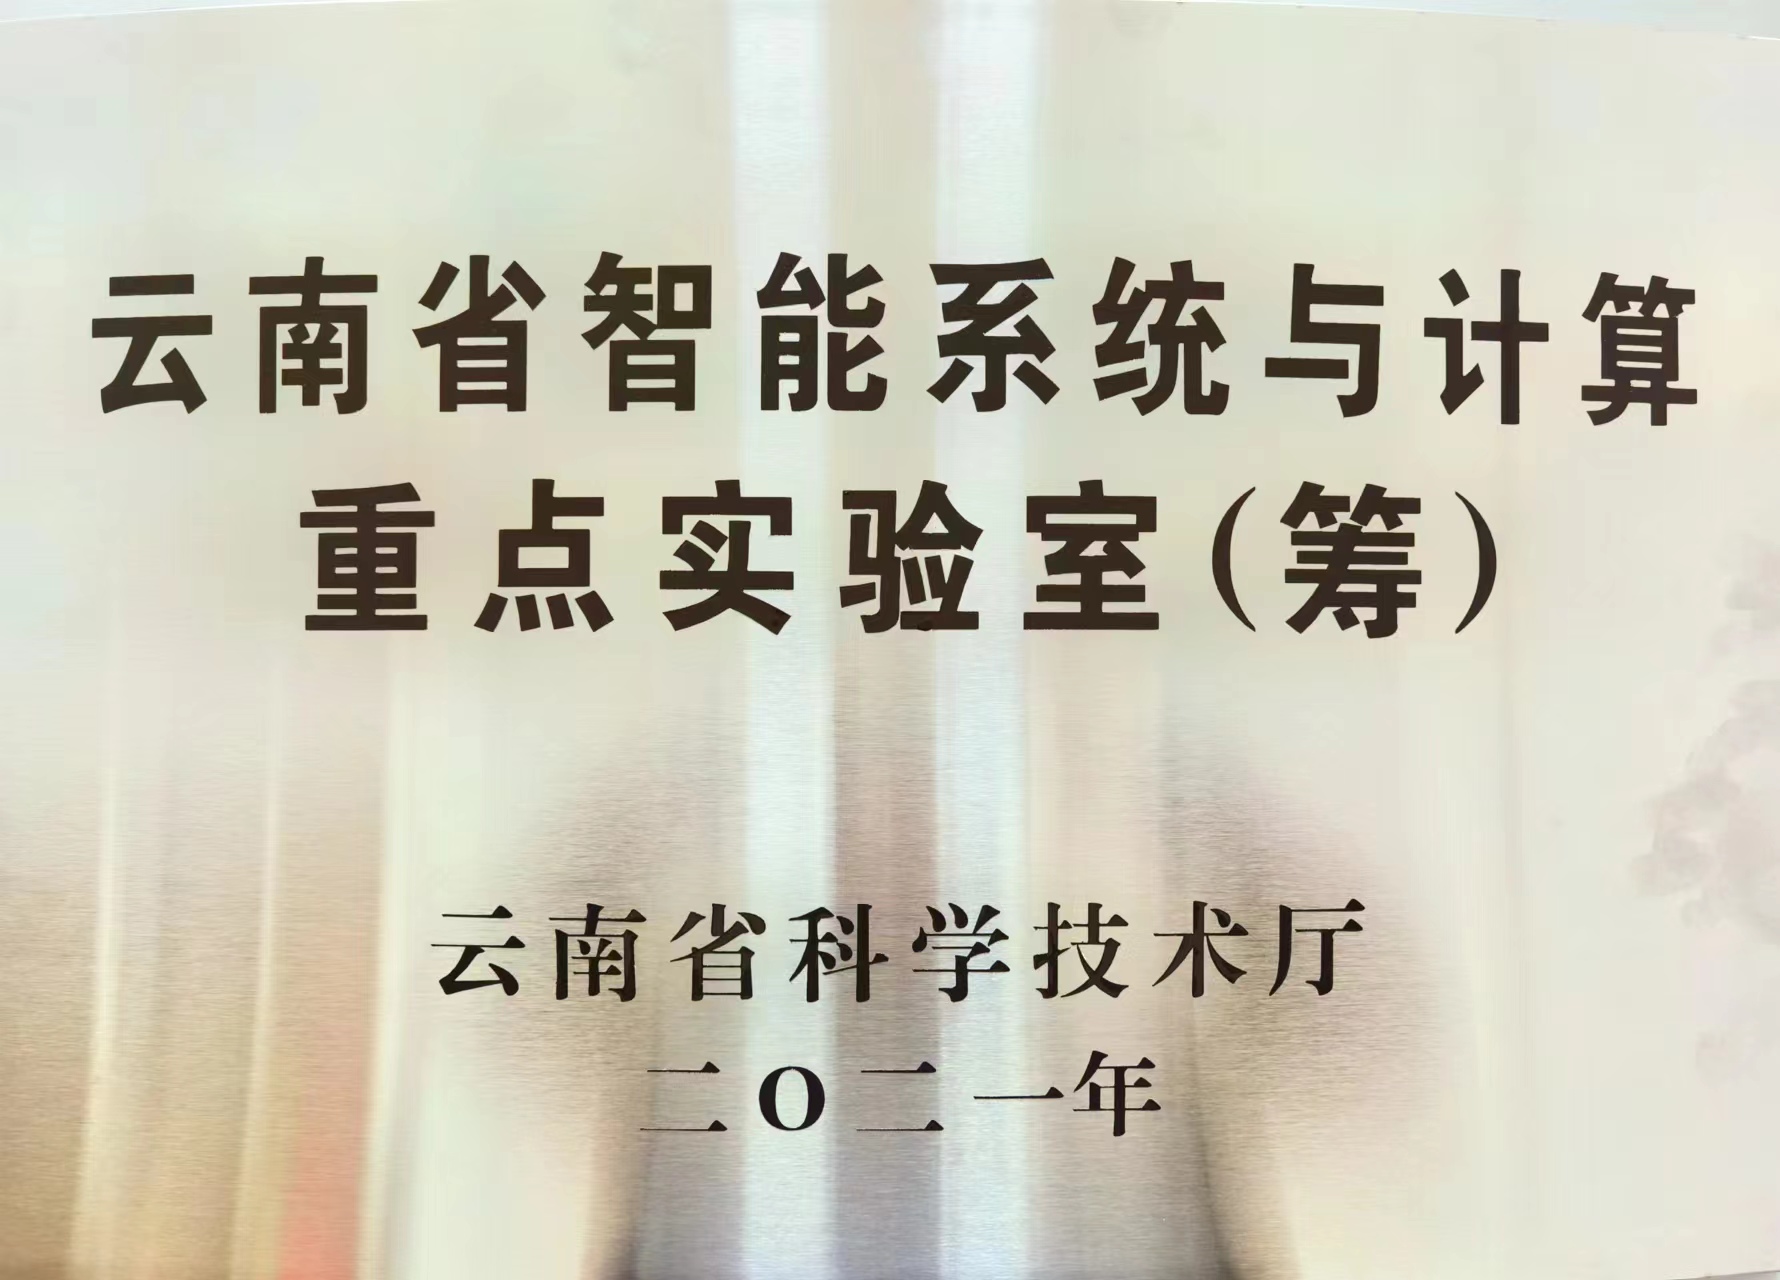 云南省智能系统与计算重点实验室铭牌